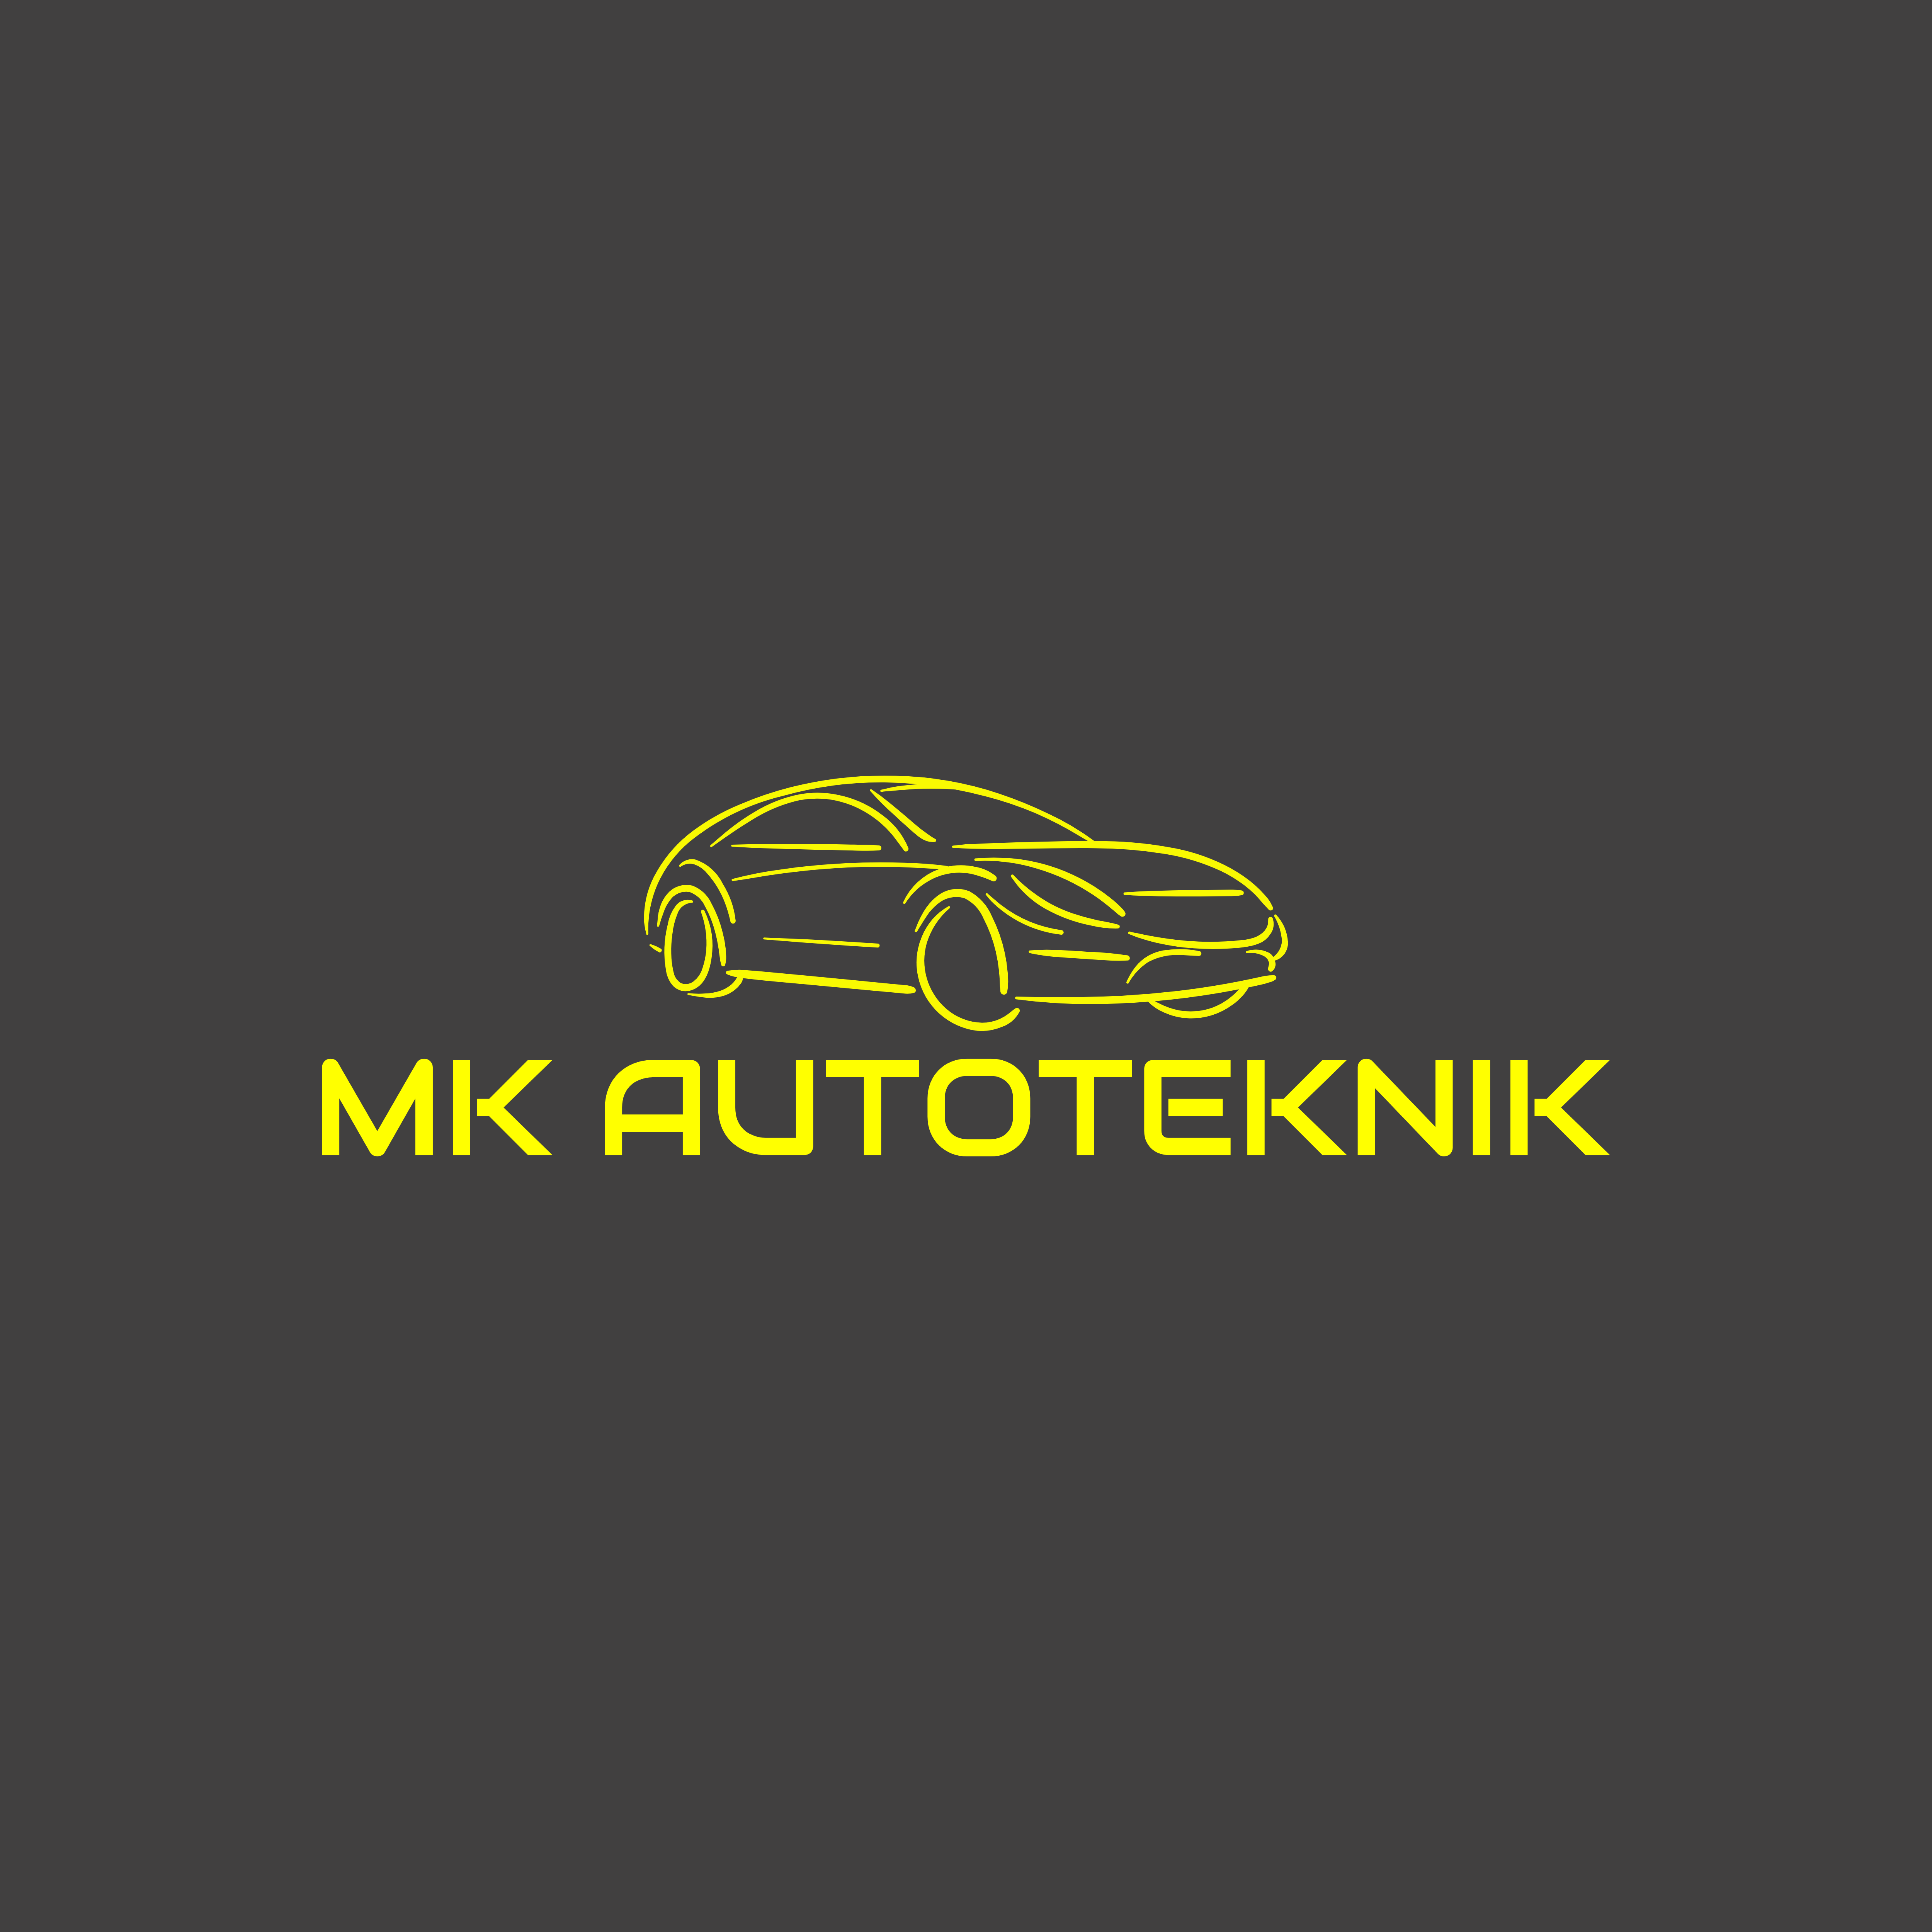 MK Autoteknik logo